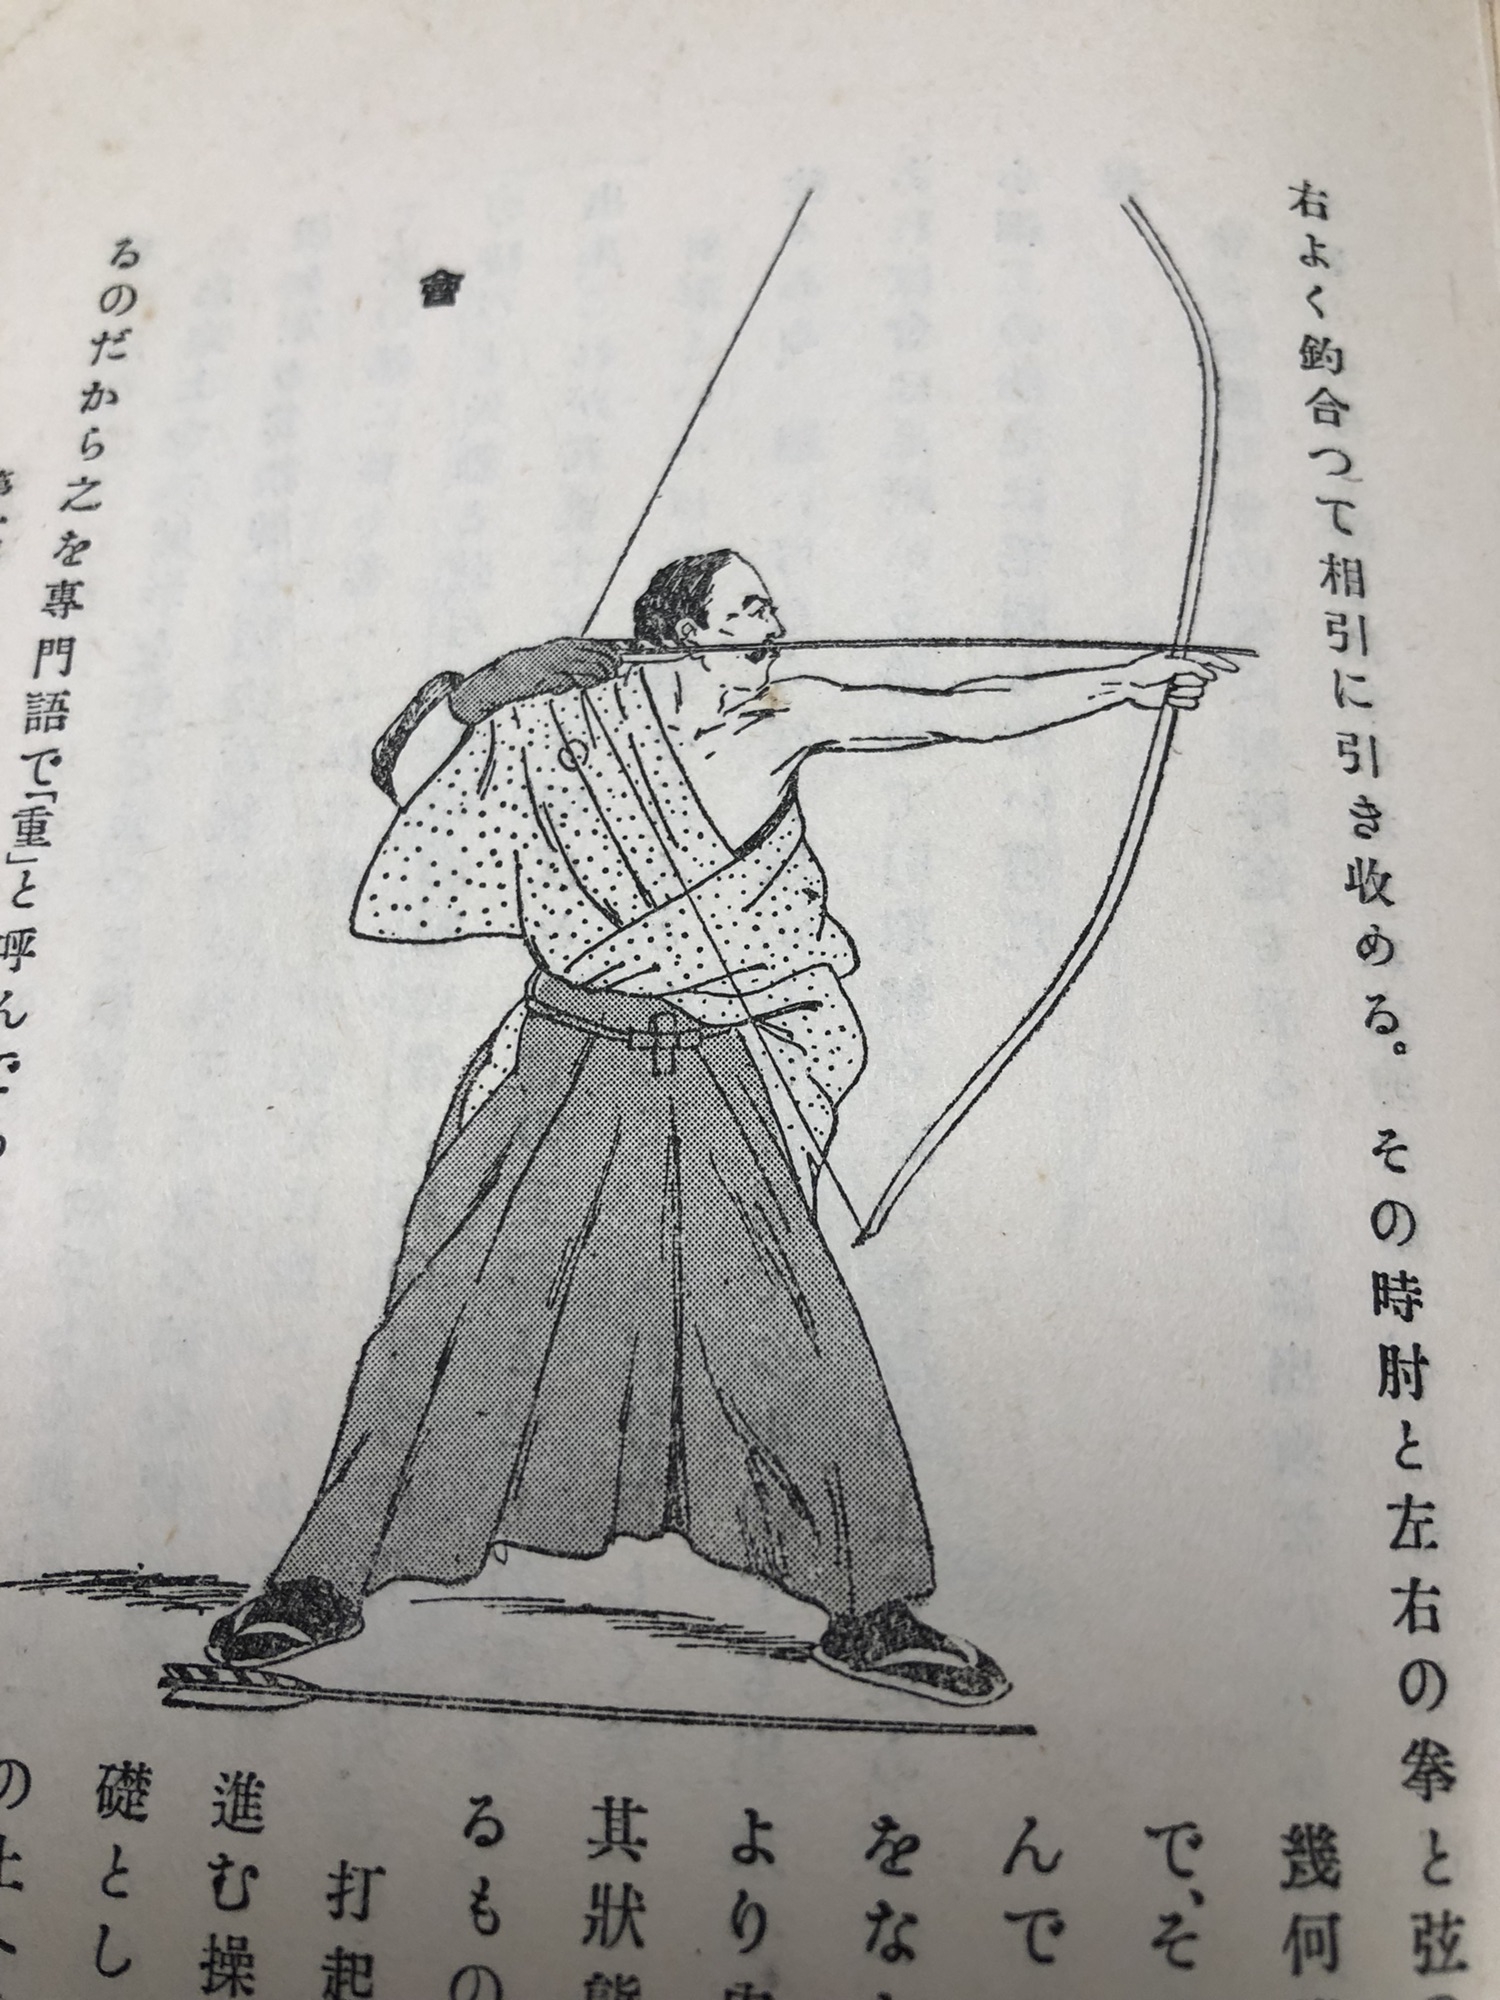 弓道書：日本體育叢書第四篇 弓道 | 尼崎弓道会 公式ホームページ